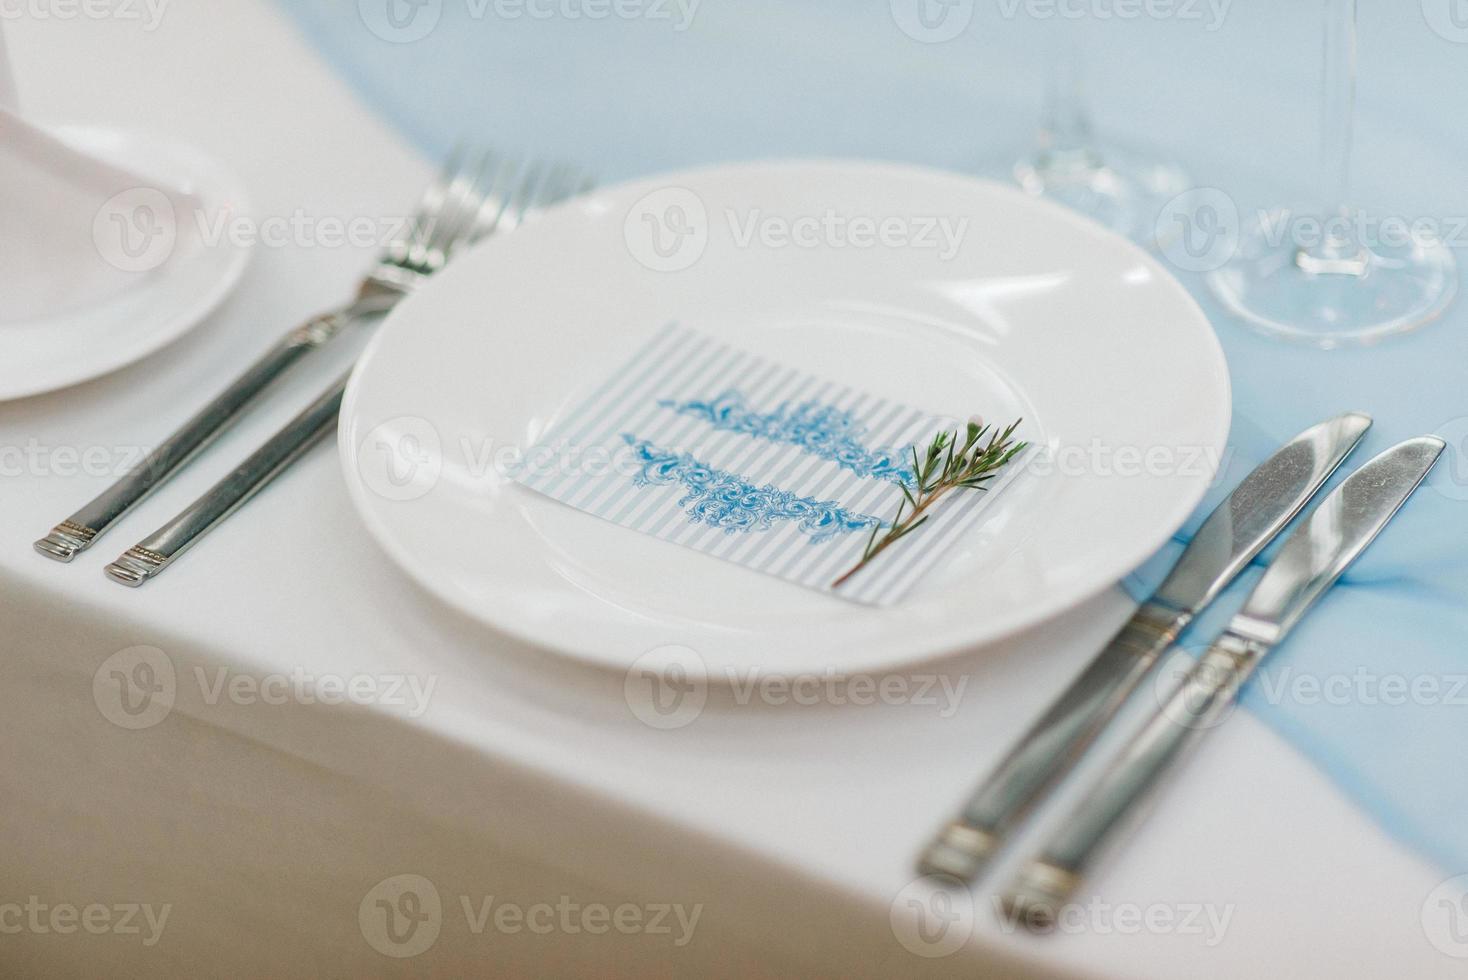 das Präsidium des Brautpaares im Festsaal des Restaurants ist mit Kerzen und Grünpflanzen geschmückt foto